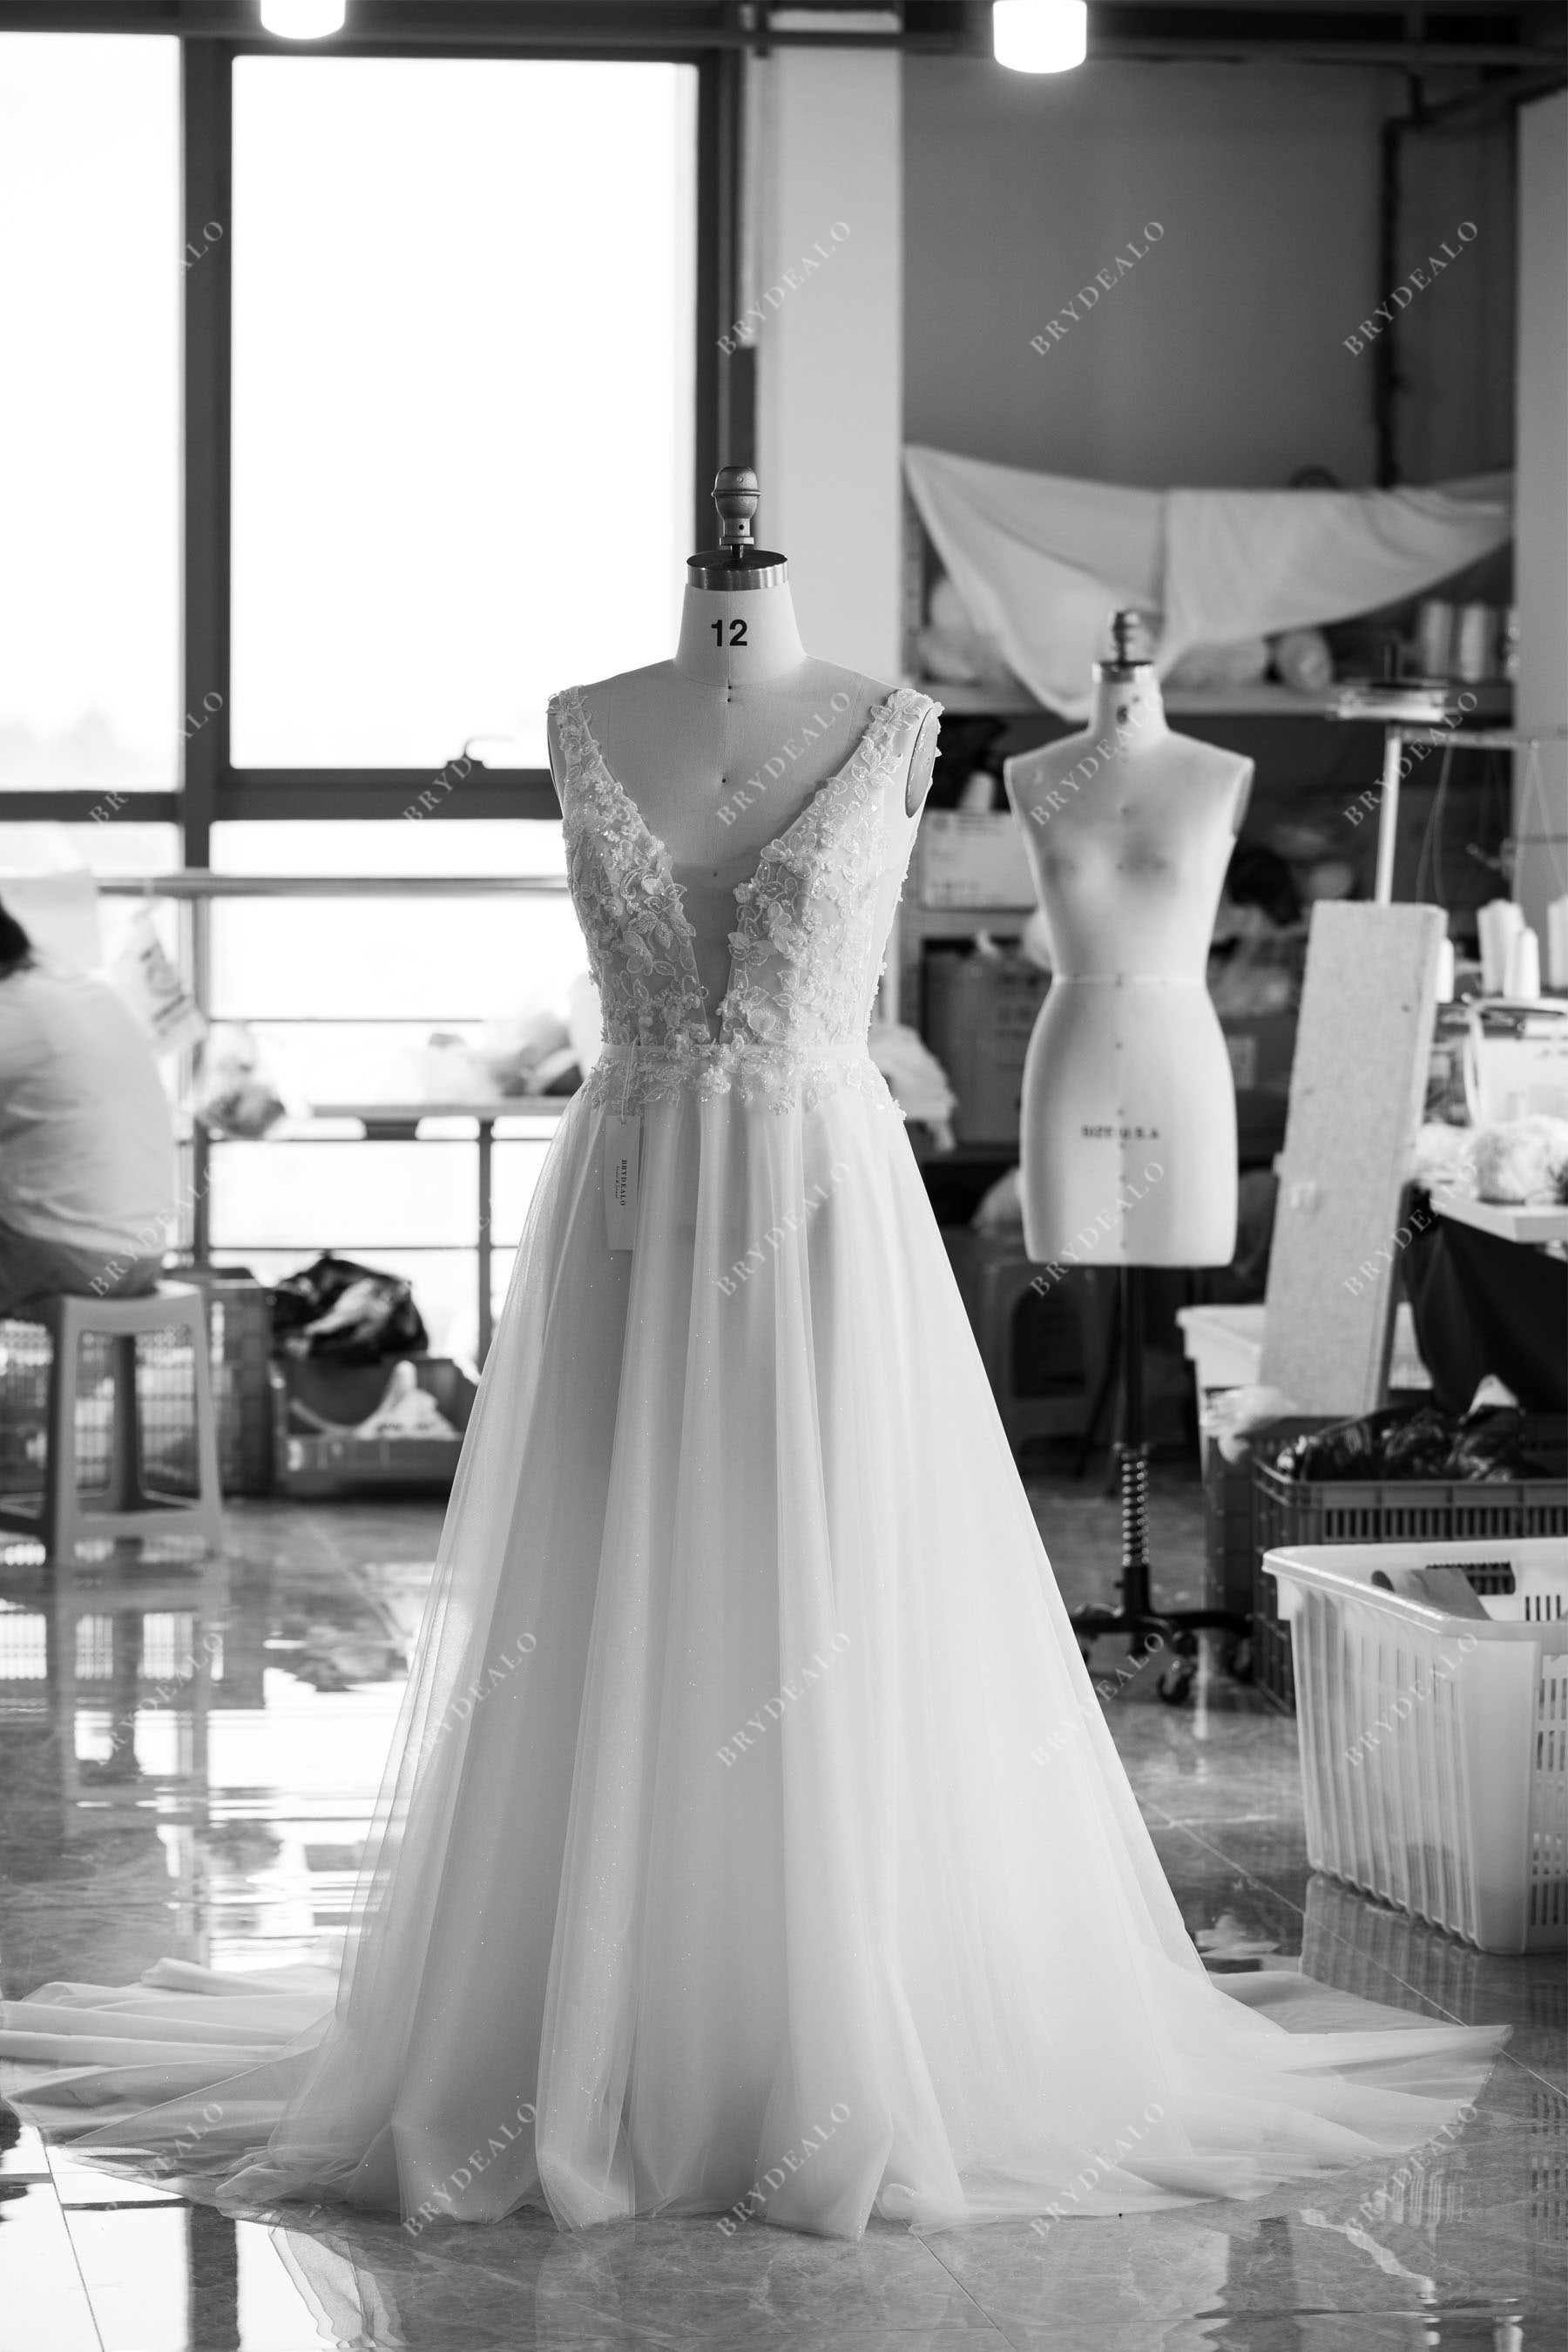 wholesale 3D flower lace wedding dress